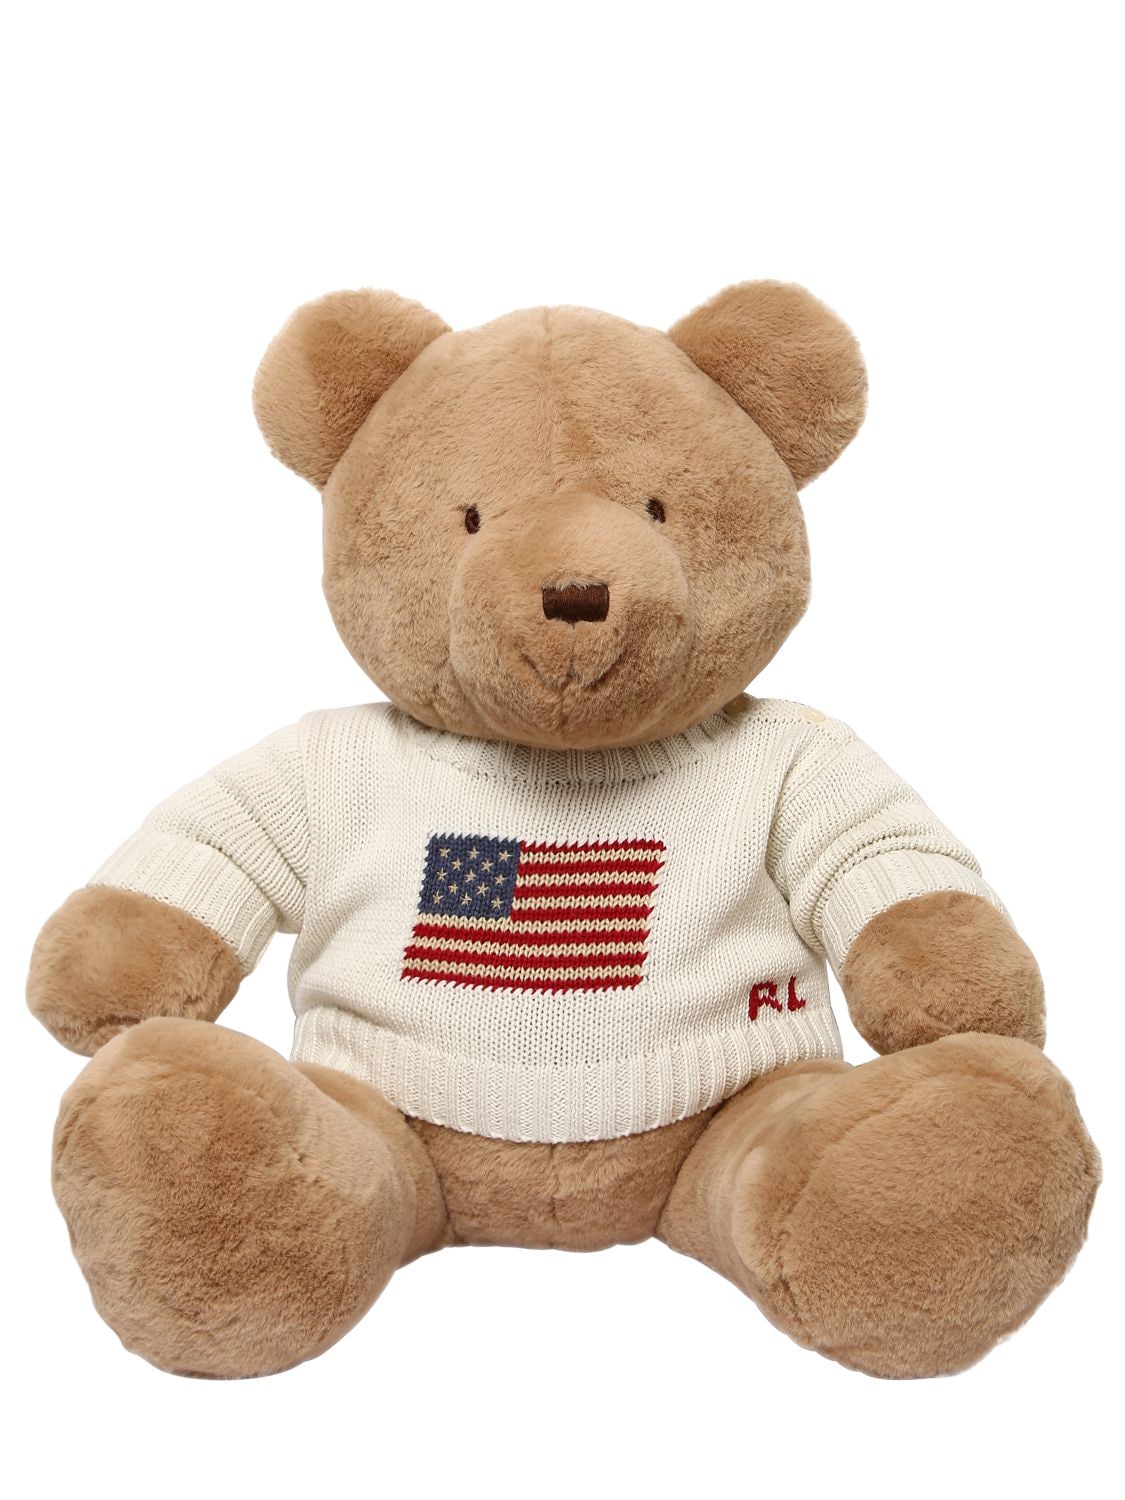 ralph lauren stuffed teddy bear